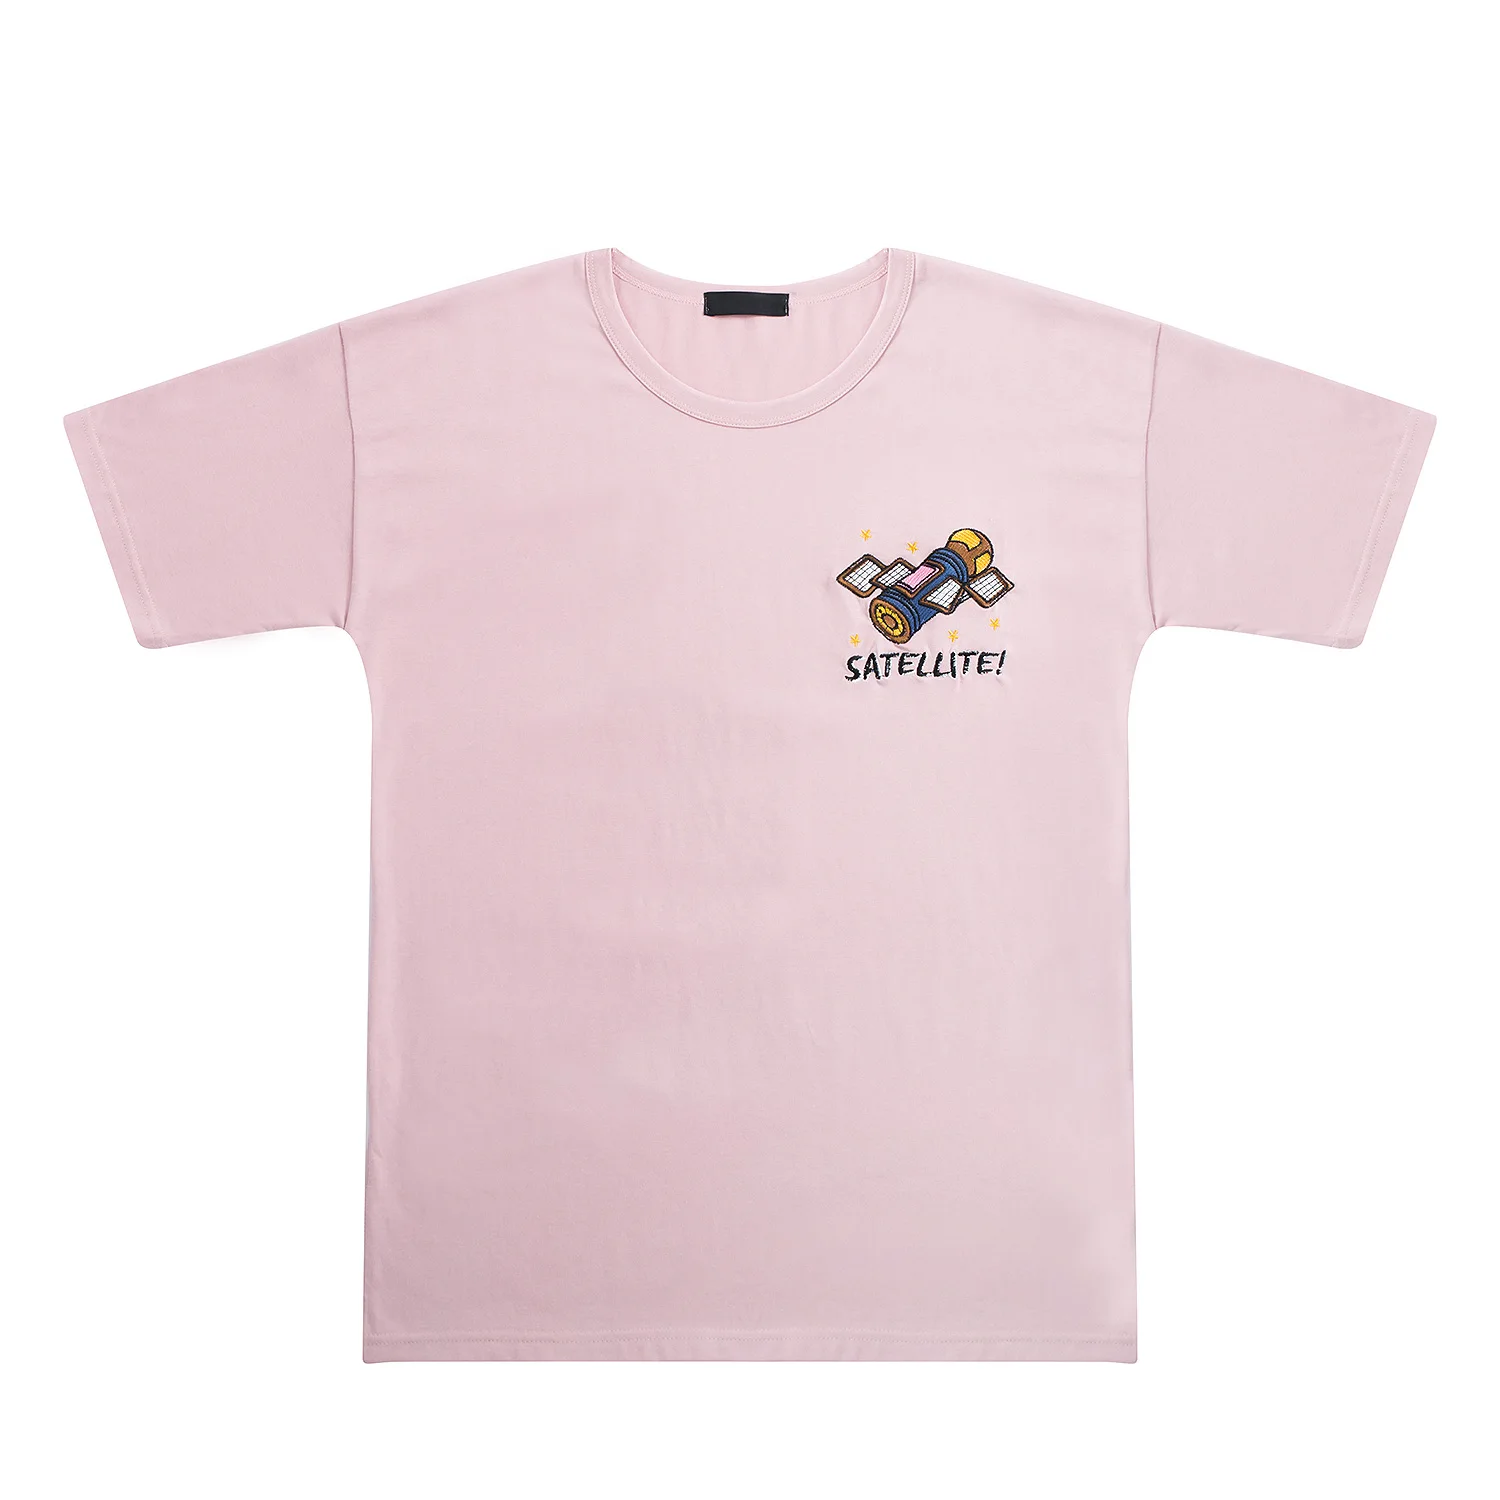 Корейская мода, женская летняя футболка с круглым вырезом, свободная, короткий рукав, Женская хлопковая футболка, топы, хаки, розовый, вышивка космическим кораблем - Цвет: Розовый